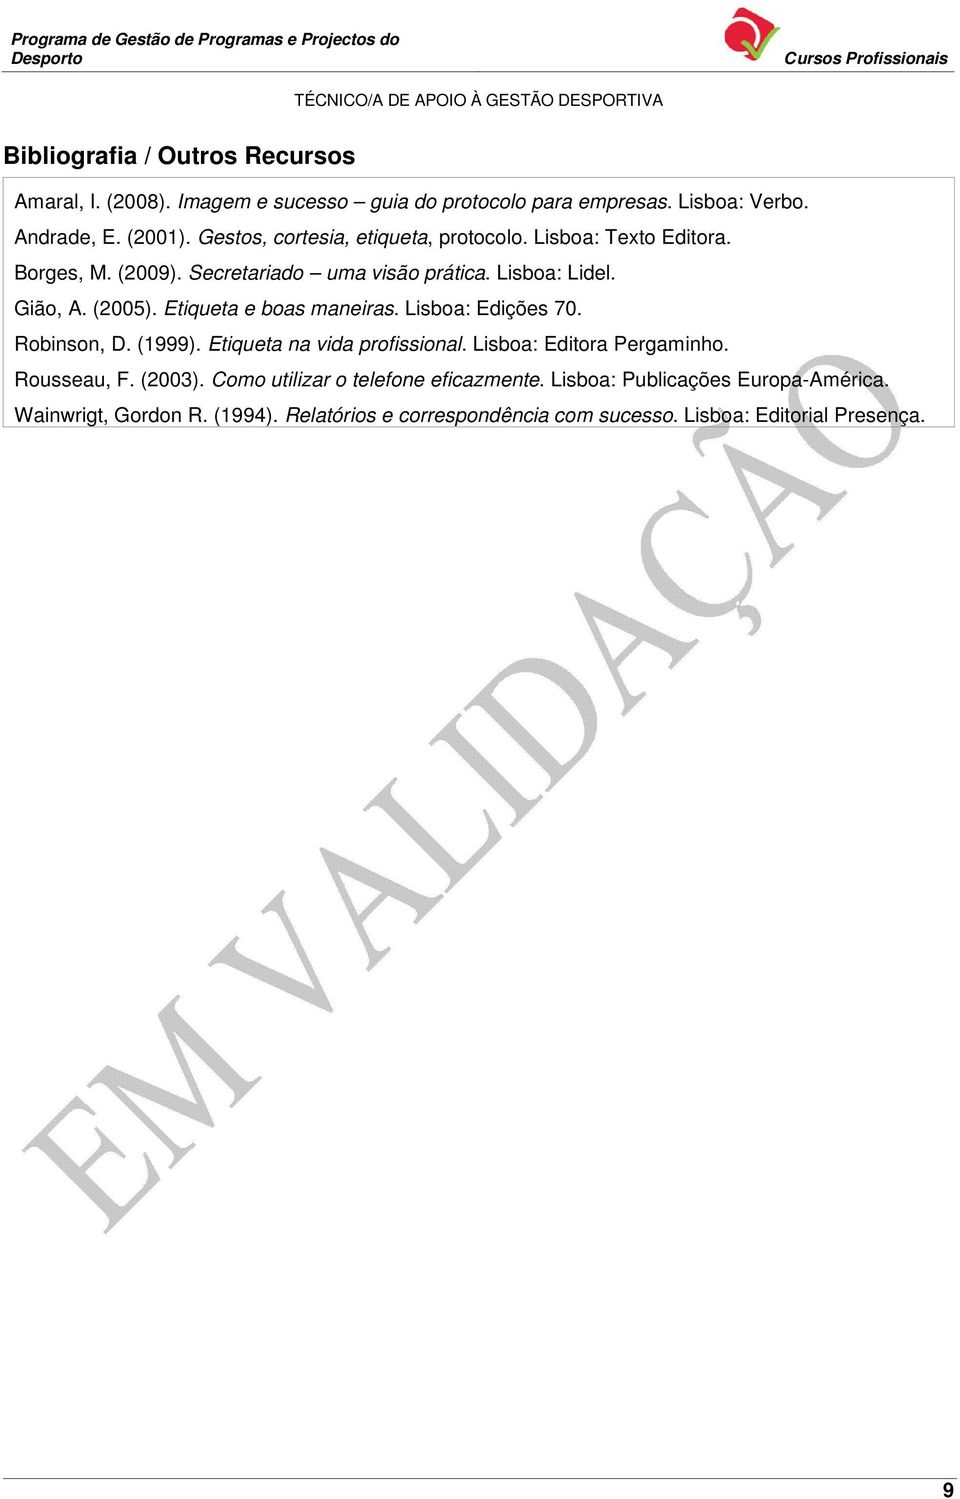 Etiqueta e boas maneiras. Lisboa: Edições 70. Robinson, D. (1999). Etiqueta na vida profissional. Lisboa: Editora Pergaminho. Rousseau, F. (2003).